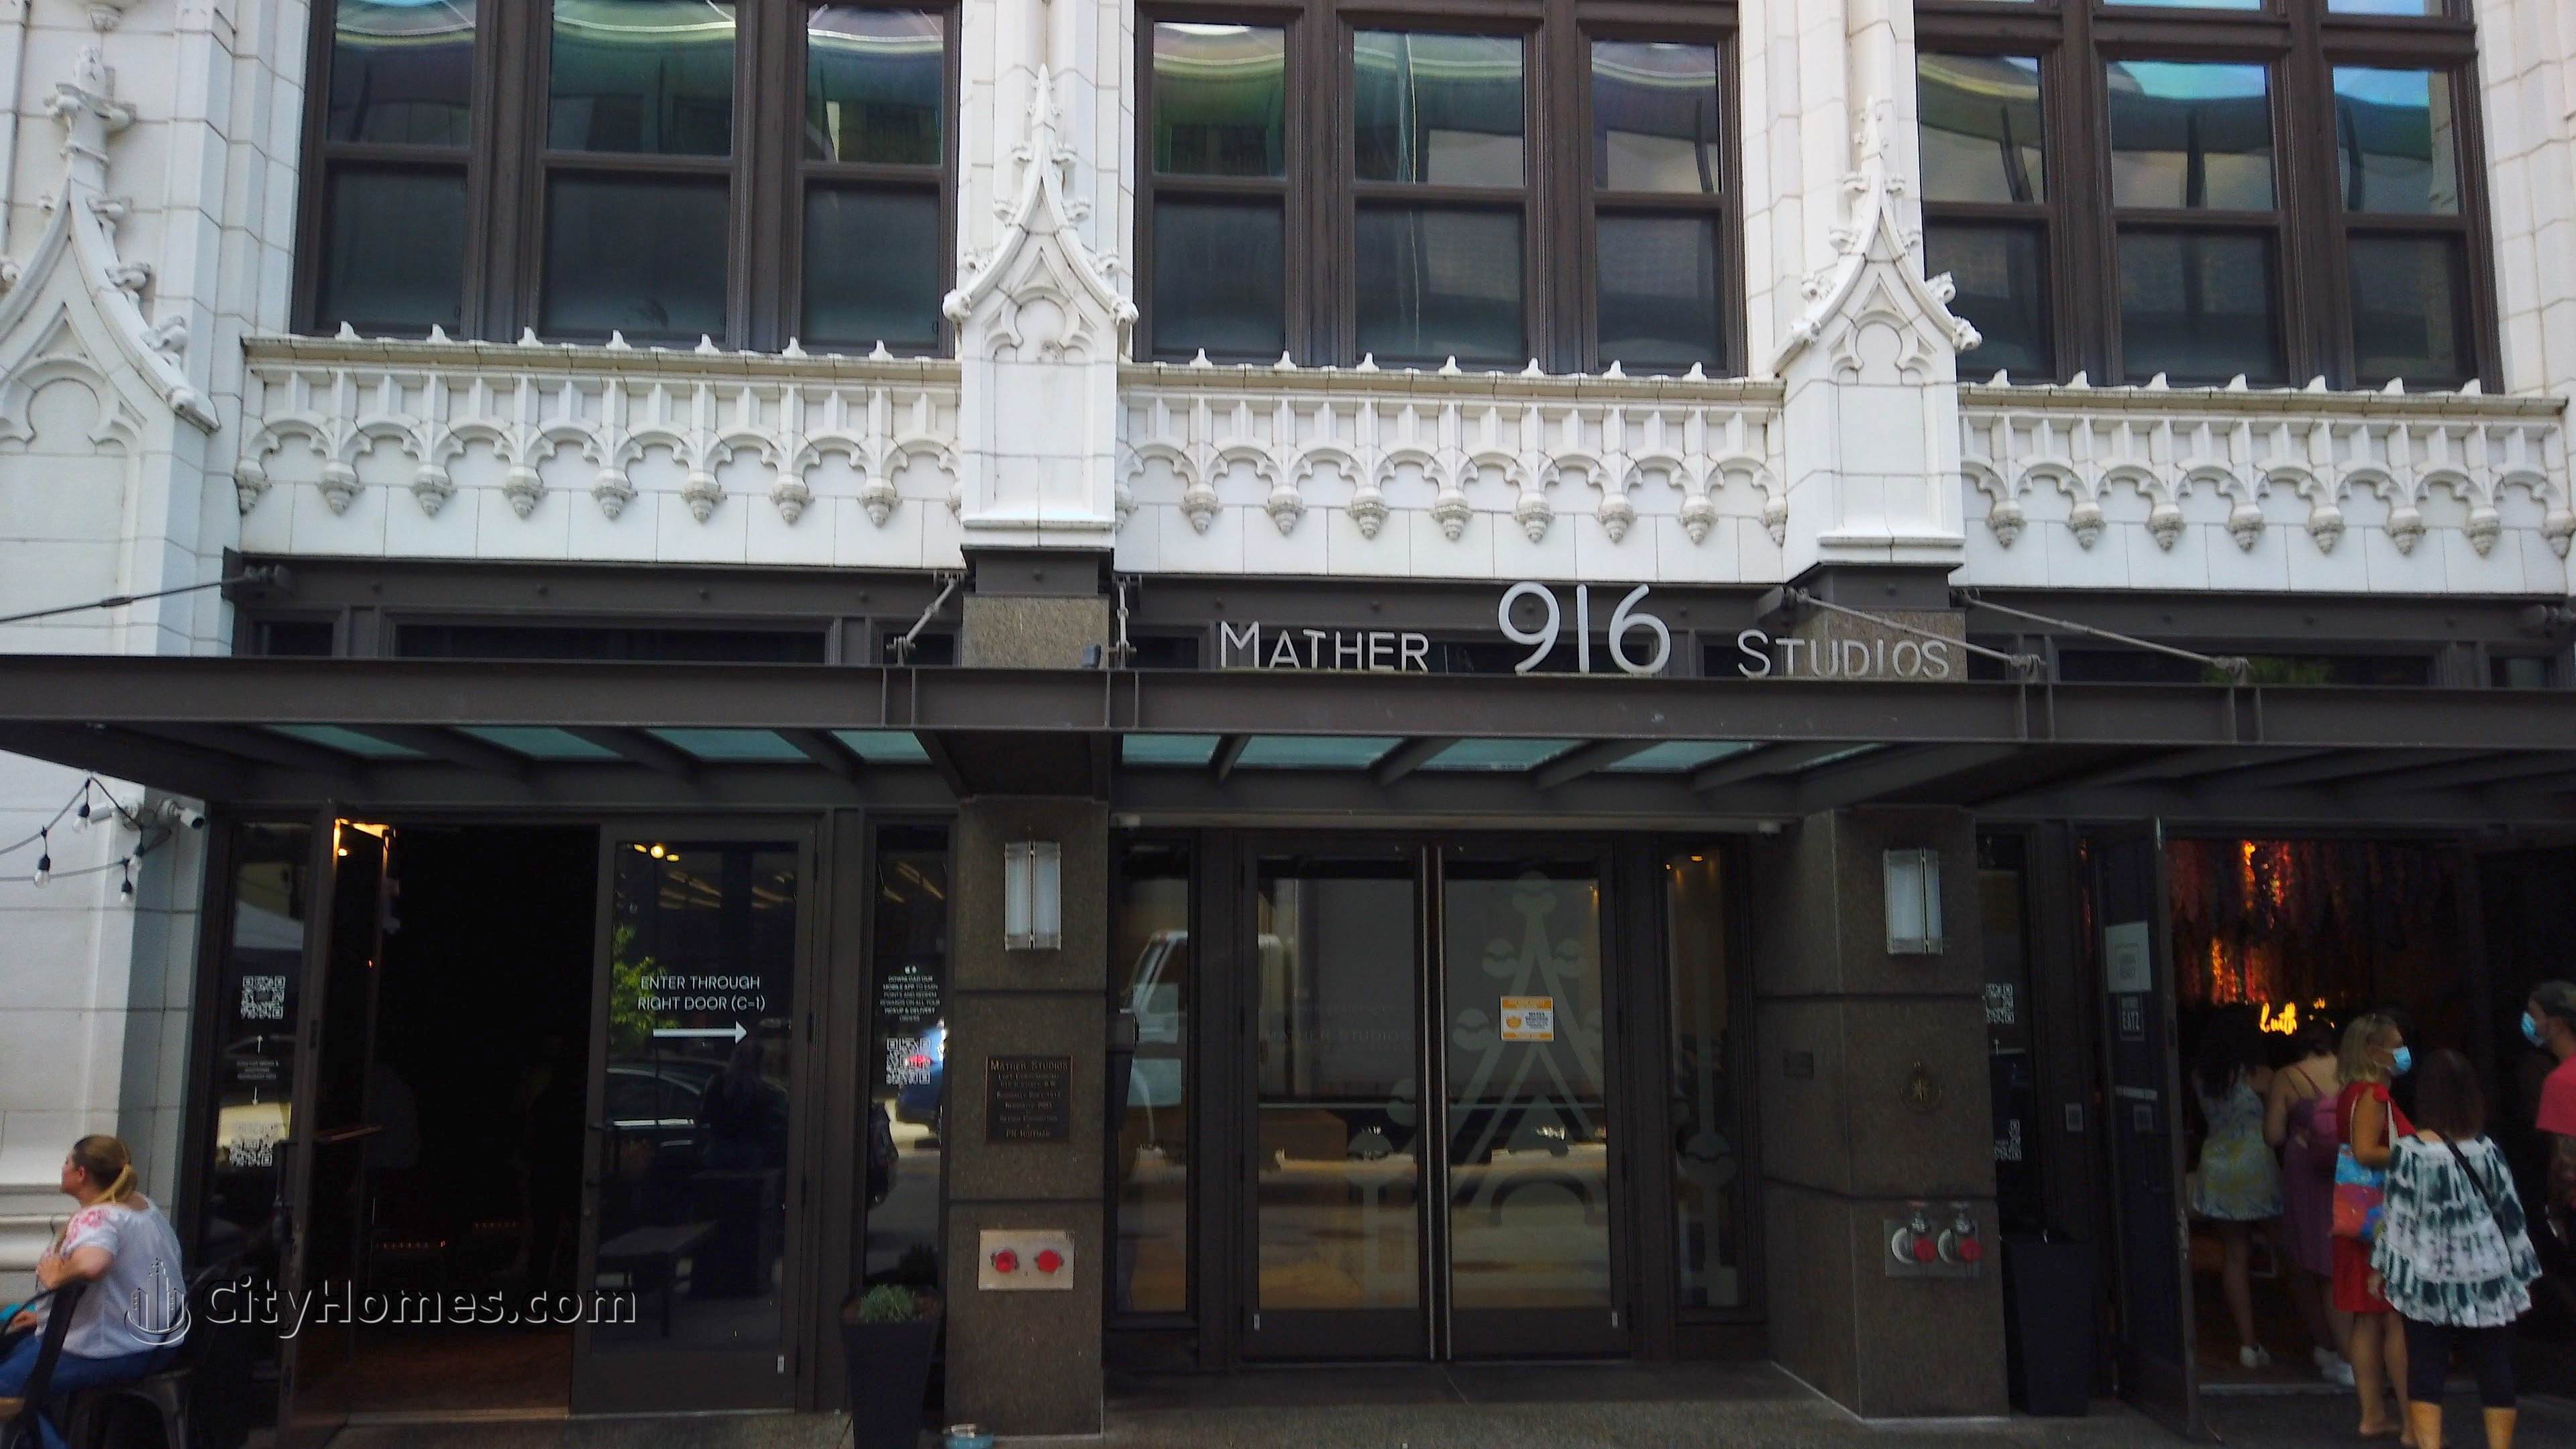 Mather Studios xây dựng tại 916 G St NW, Penn Quarter, Washington, DC 20001